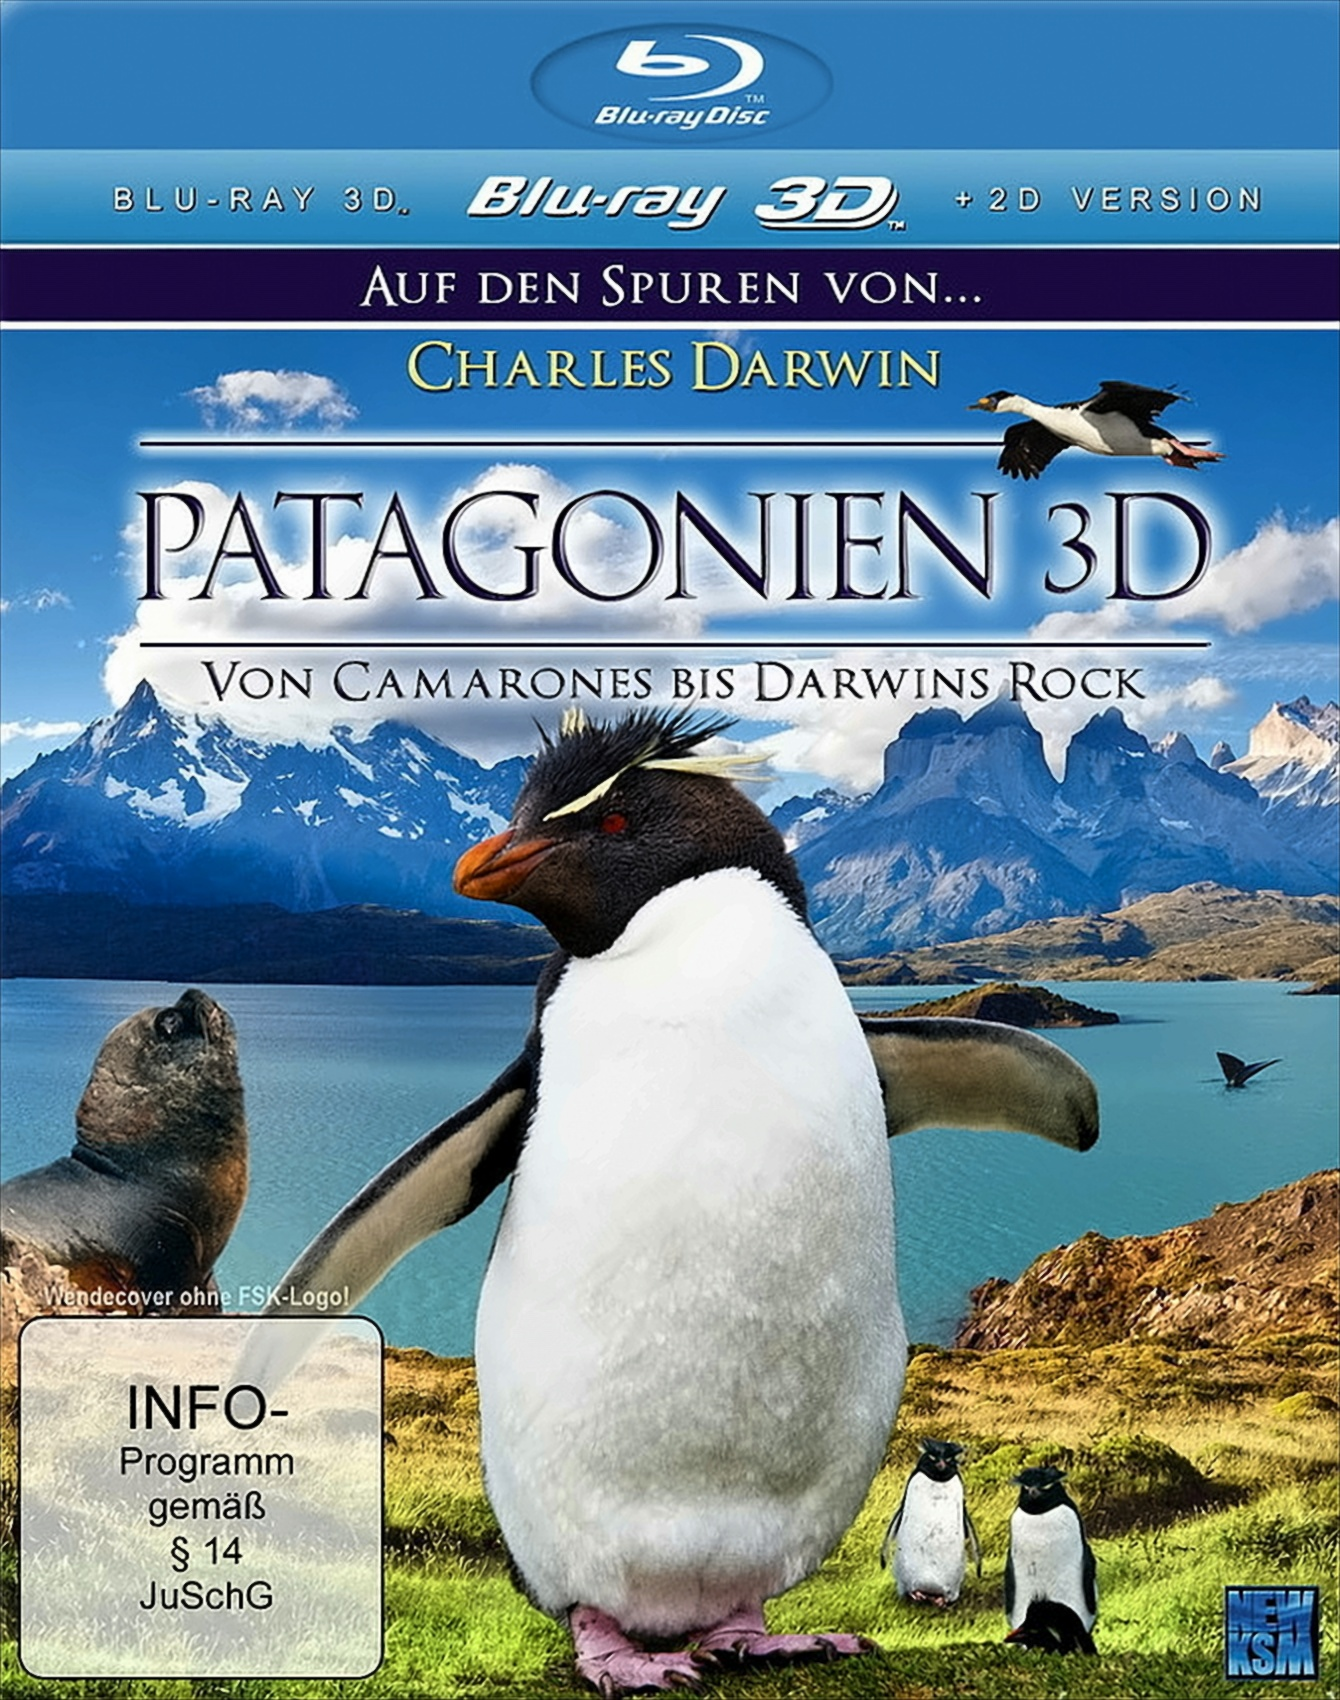 Spuren Auf Rock den Charles Darwin: bis Darwins Camarones von Von Blu-ray - 3D Patagonien